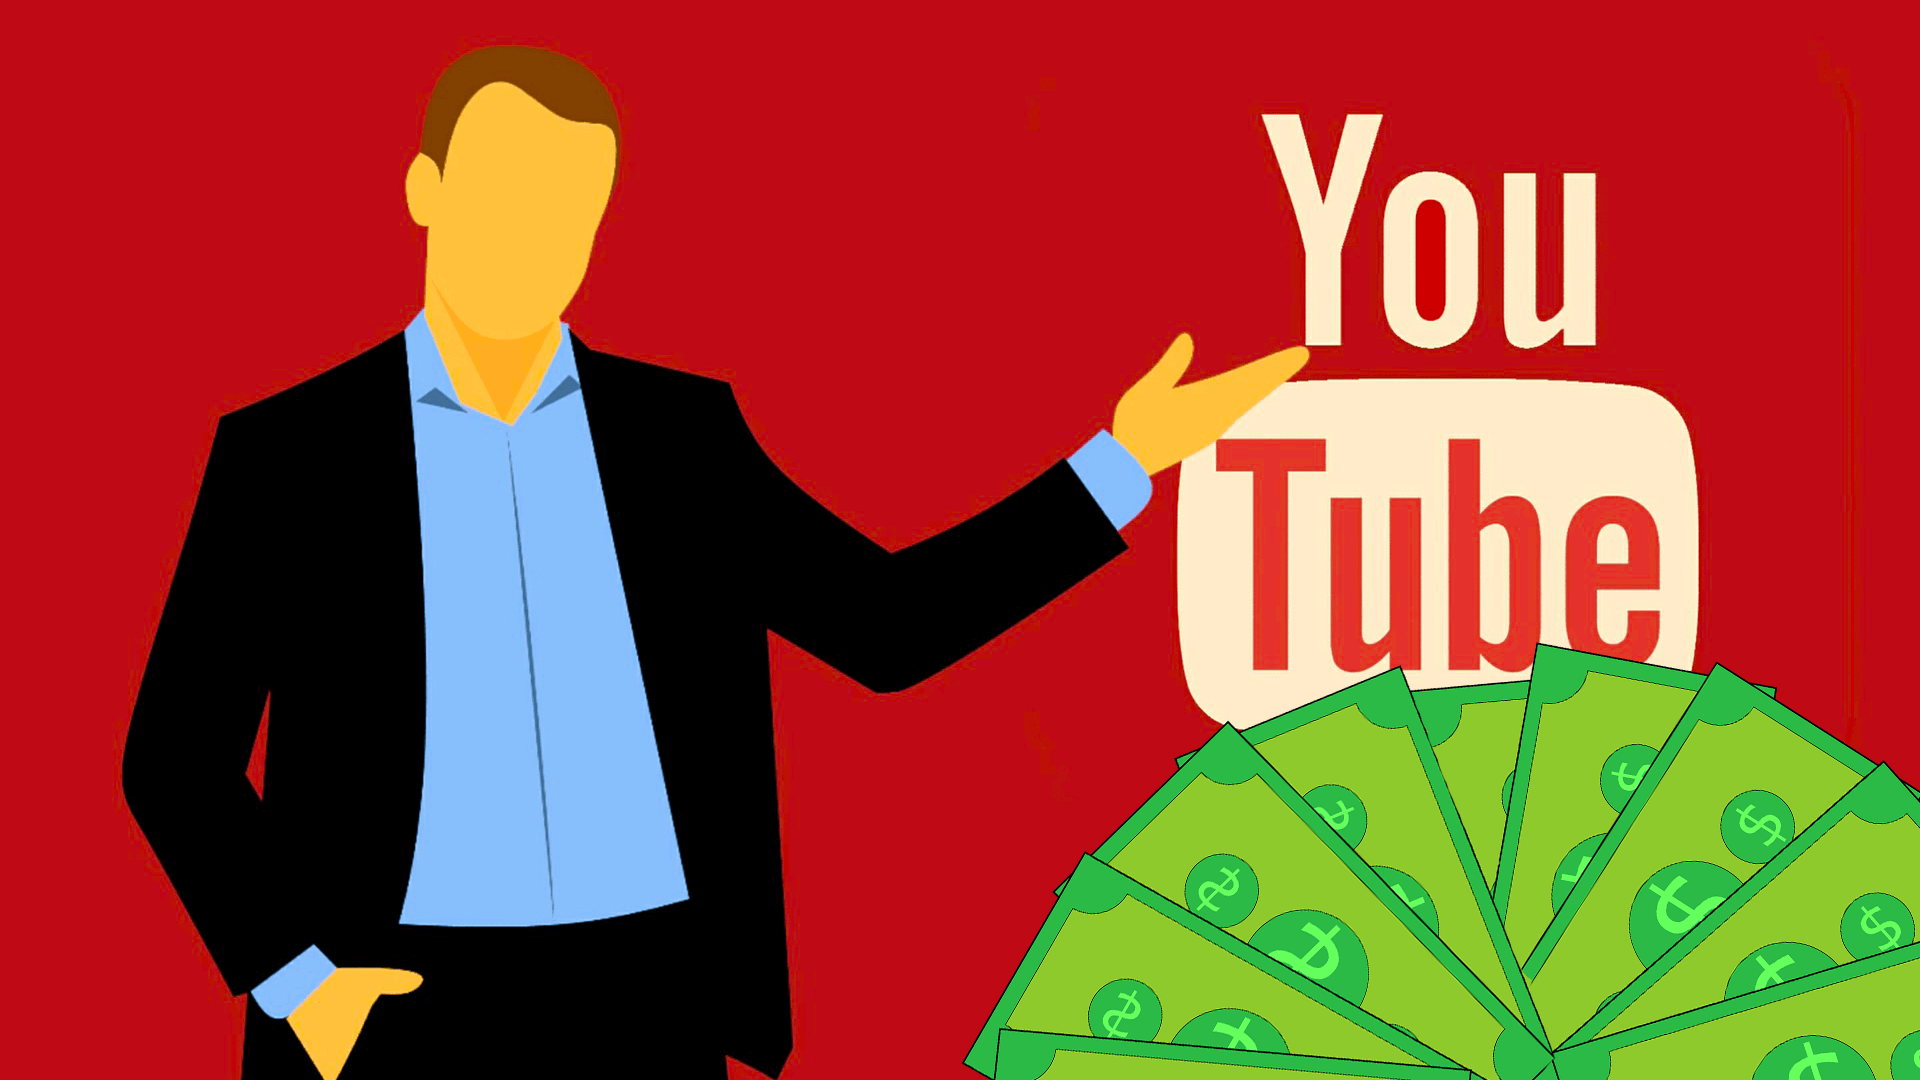 YouTube pénzkeresés: hogyan működik és mennyit lehet keresni?
Ha érdekel a YouTube pénzkeresés, illetve az, hogy mennyi pénzt lehet valójában keresni a YouTube videózásból, akkor itt részletesen olvashatsz arról, hogy hogyan működik a bevételszerzés és konkrét példákon keresztül láthatod, hogy nekem mennyi pénzt fizetett ki a YouTube. Továbbá számos lehetőséget mutatok számodra amellyel kiegészítheted, illetve összekapcsolhatod a YouTube fizetésed.